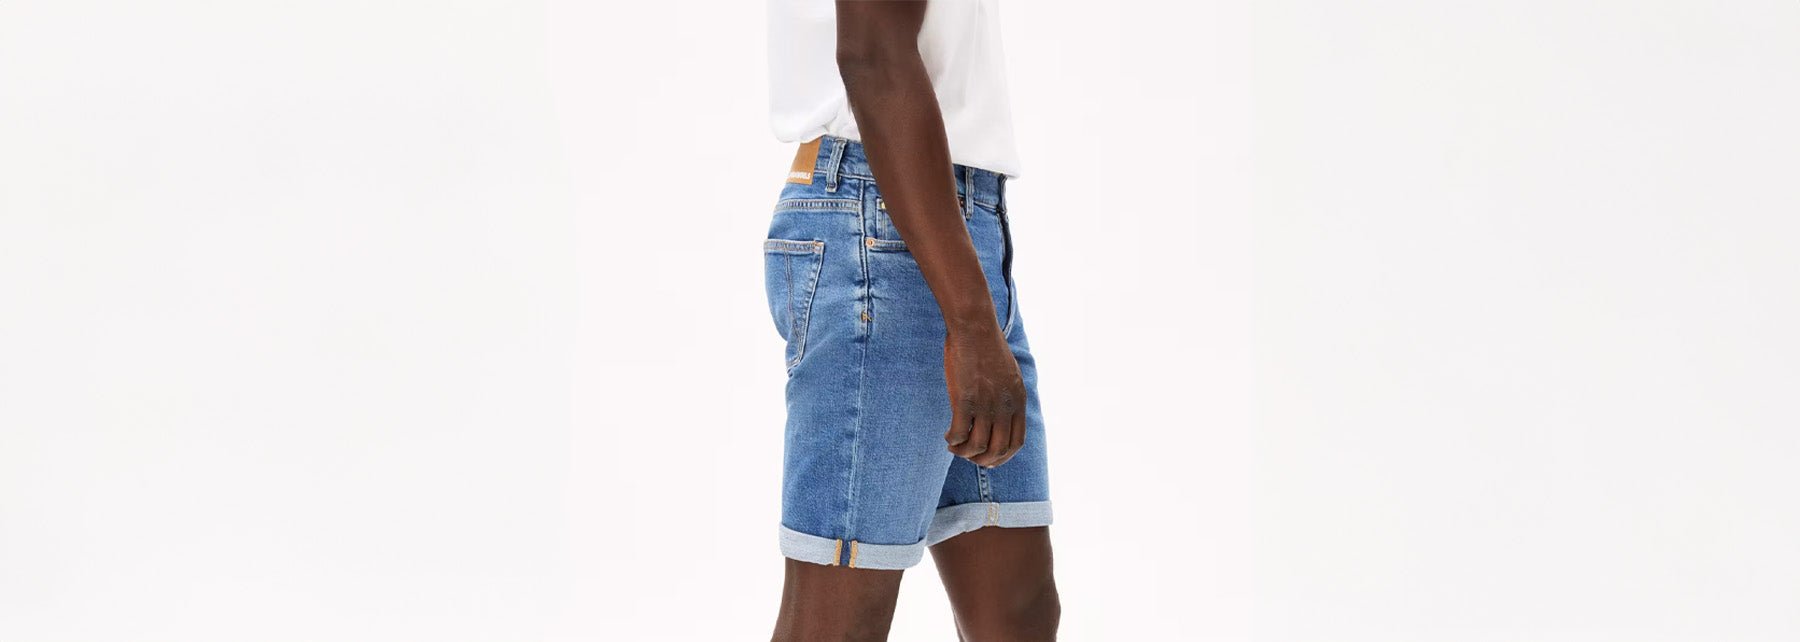 Men Shorts Jeans - BACKYARD